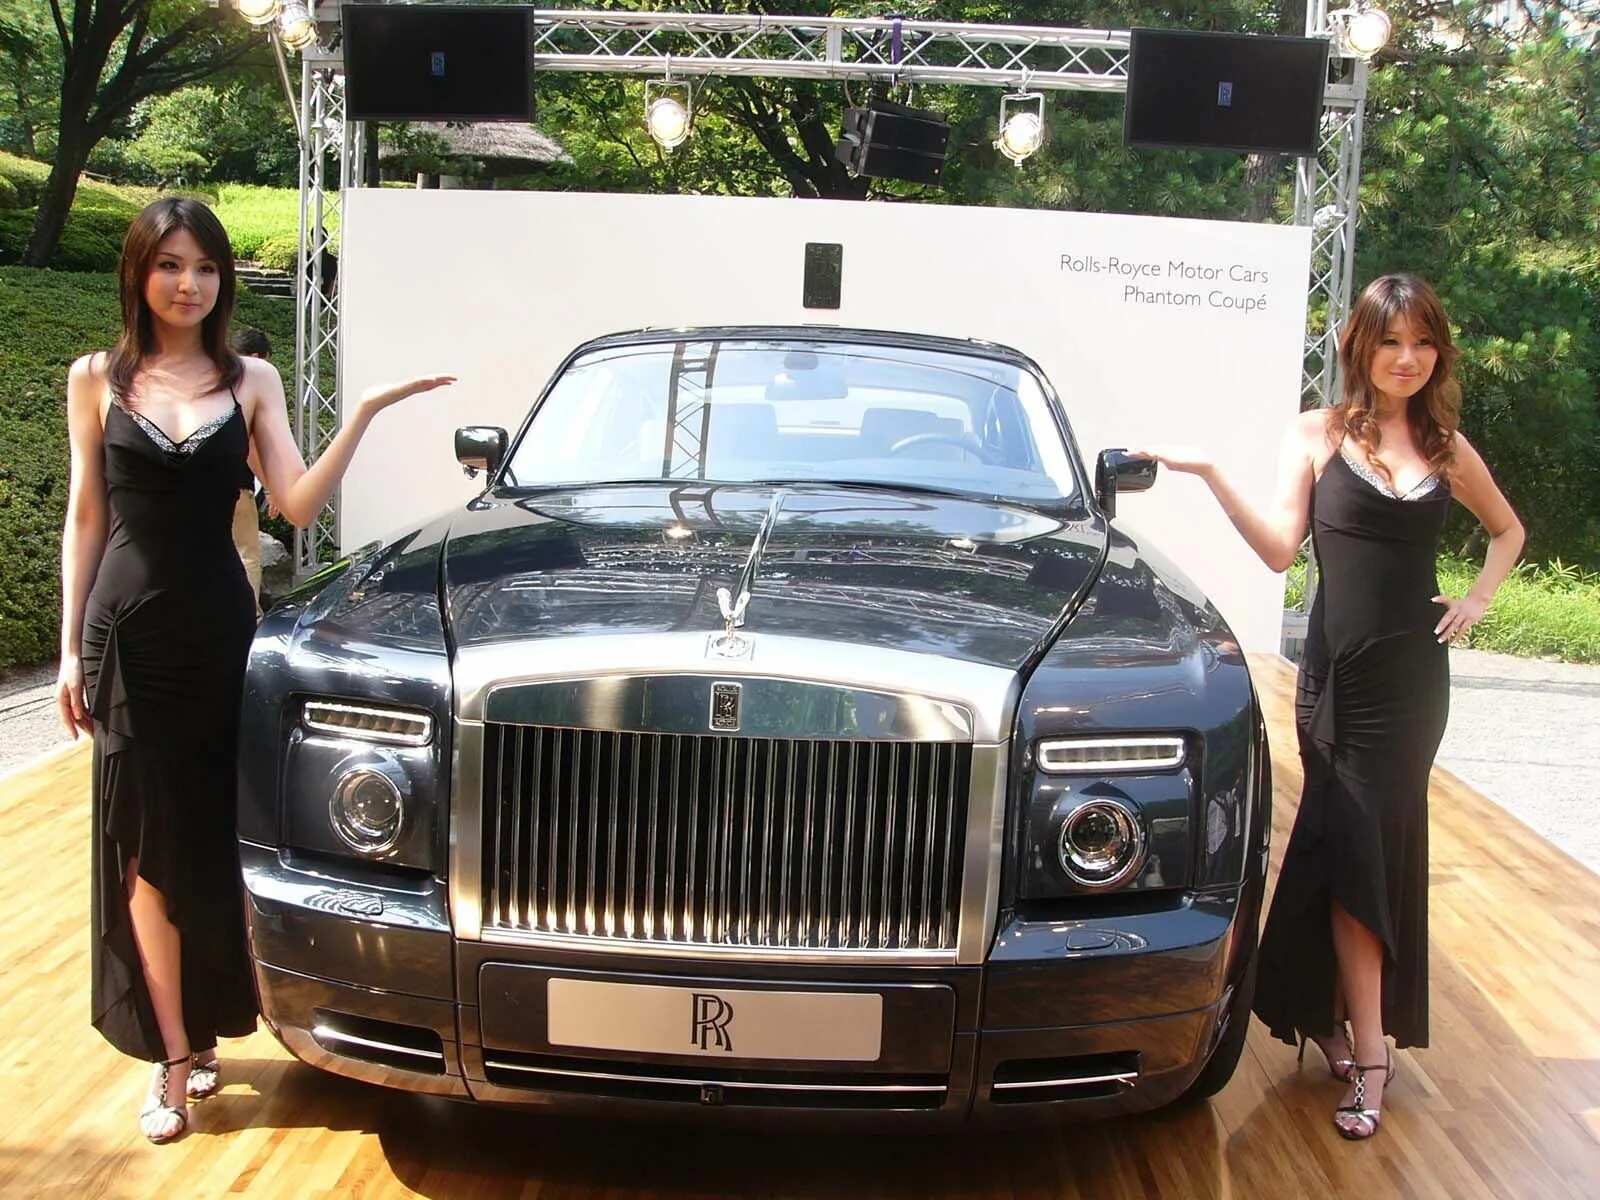 Two rolls. Брюнетка в Роллс Ройс. Женщина рядом с Rolls Royce. Богатые девчонки в Ролс Ройсе. Две богатые девушки в Ролс Ройсе.